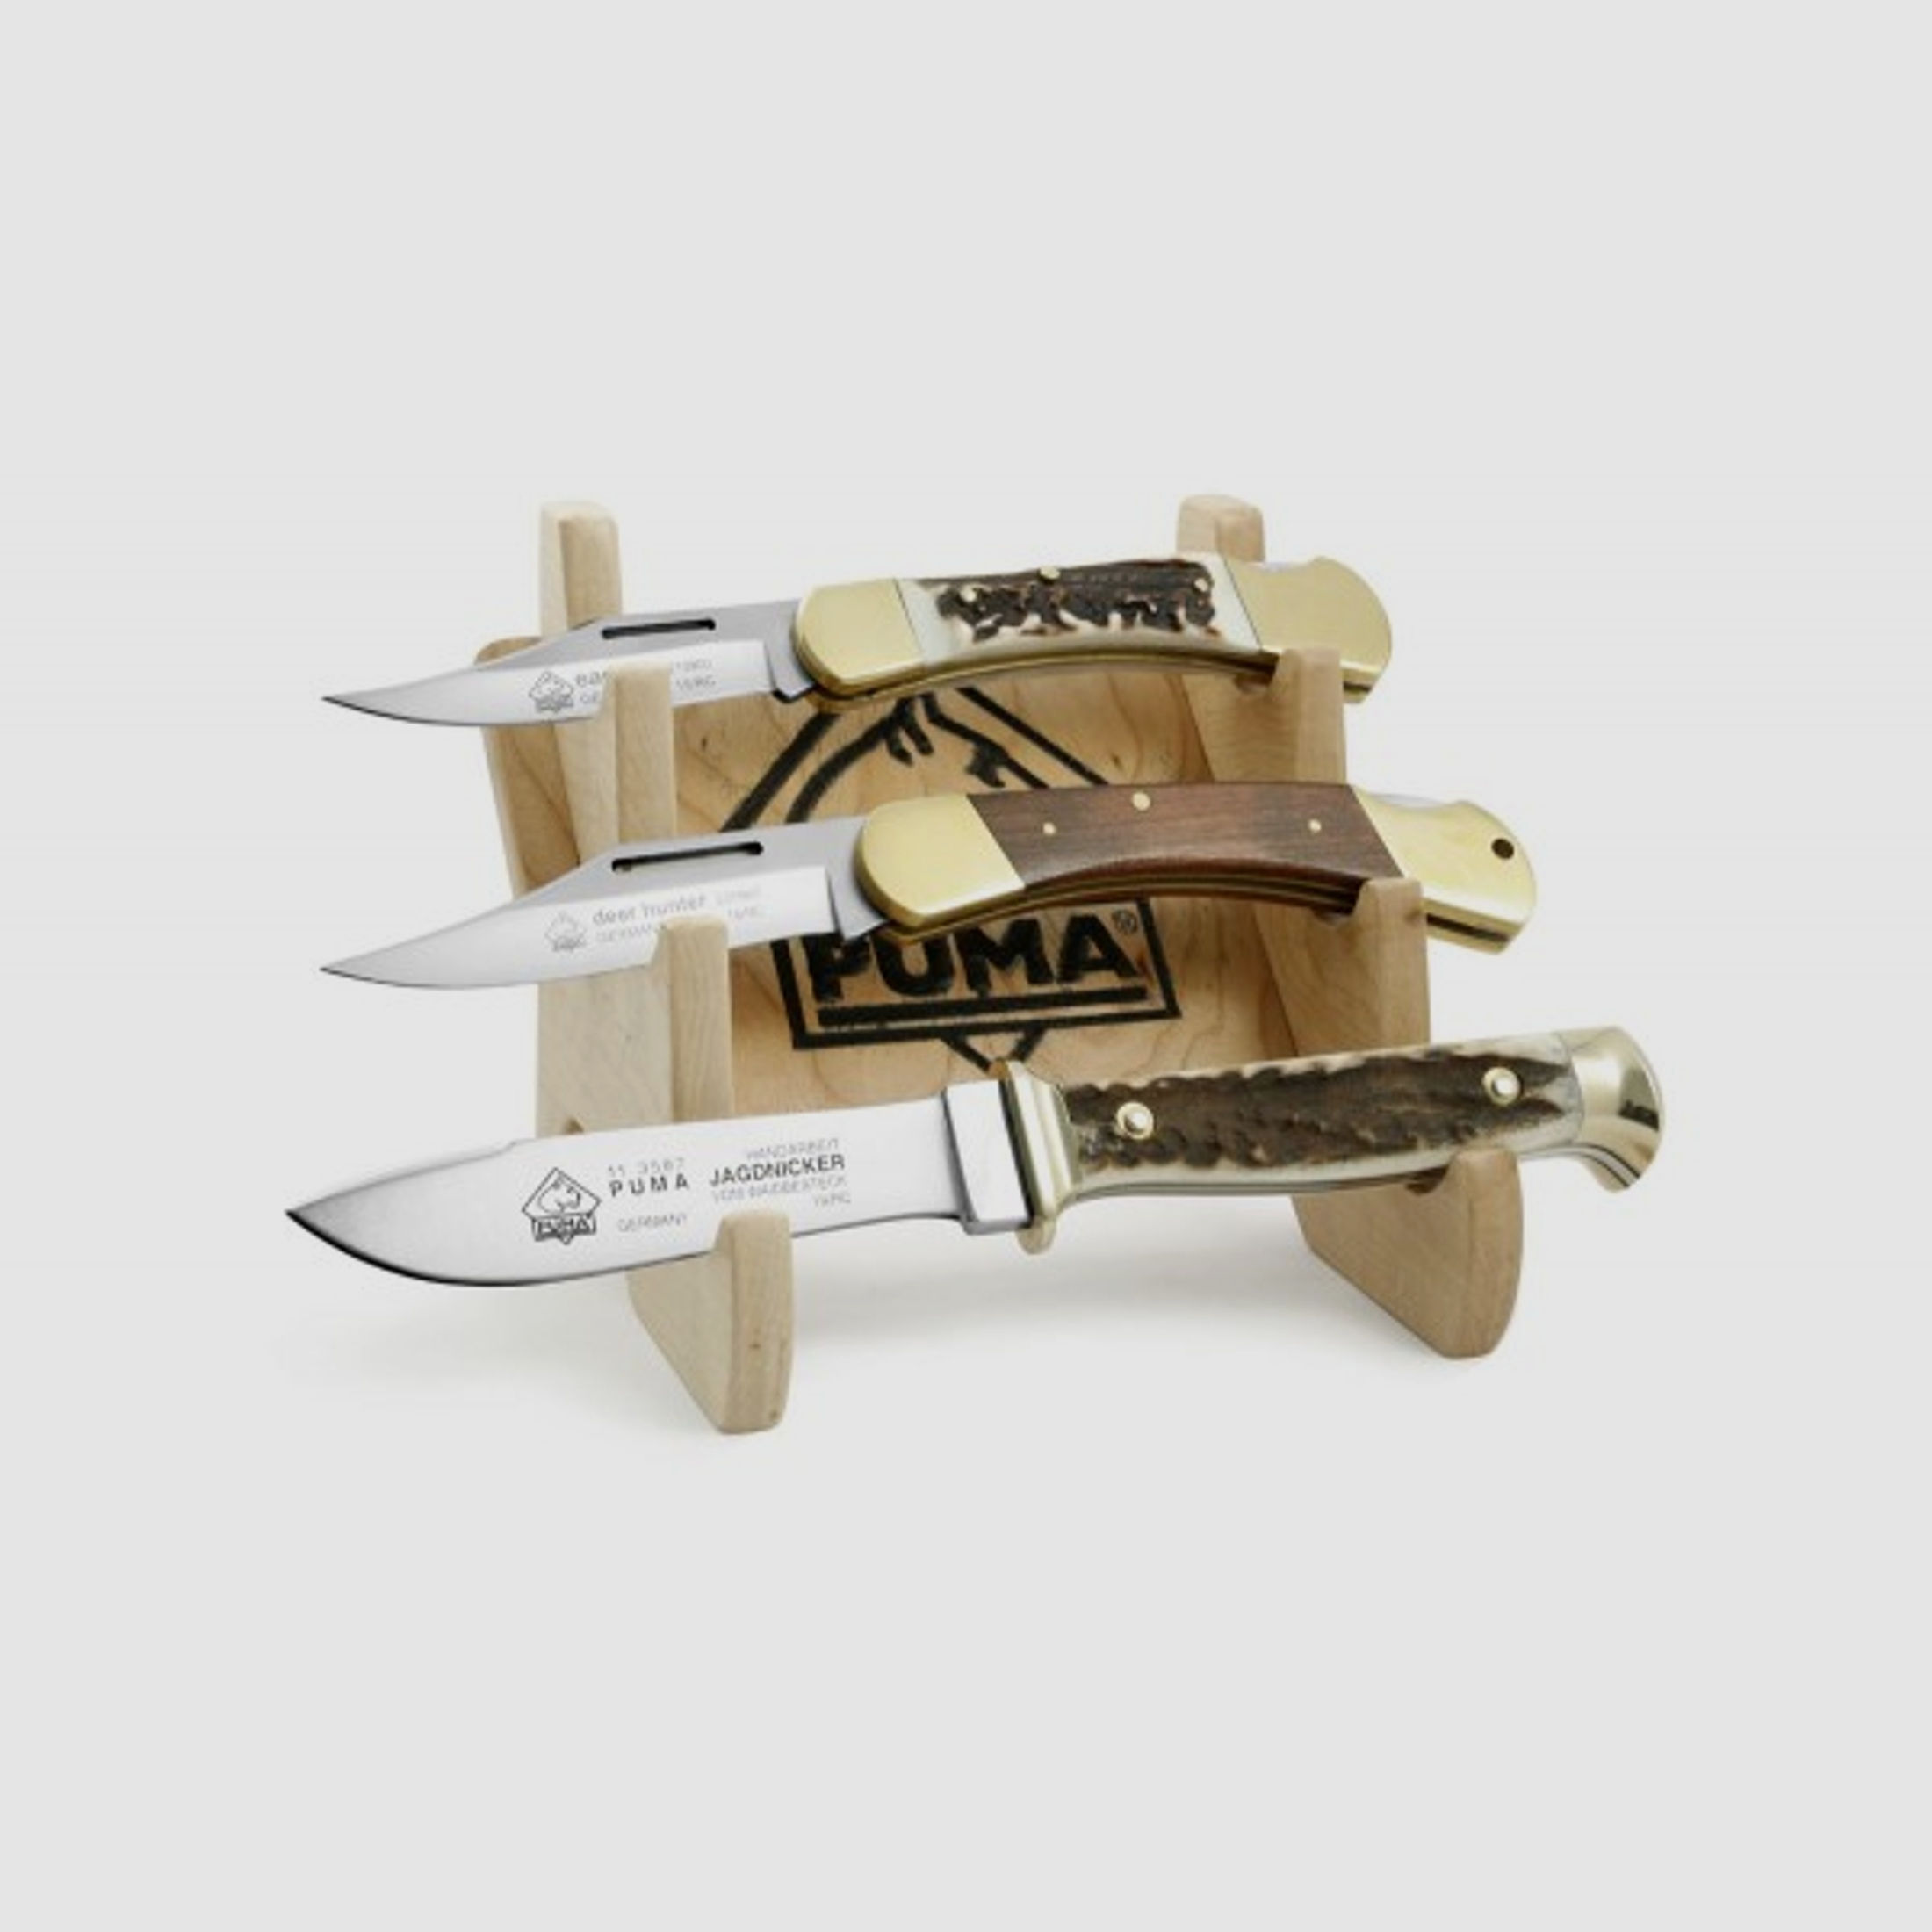 PUMA Messerständer für 3 Messer, Holz ohne Messer